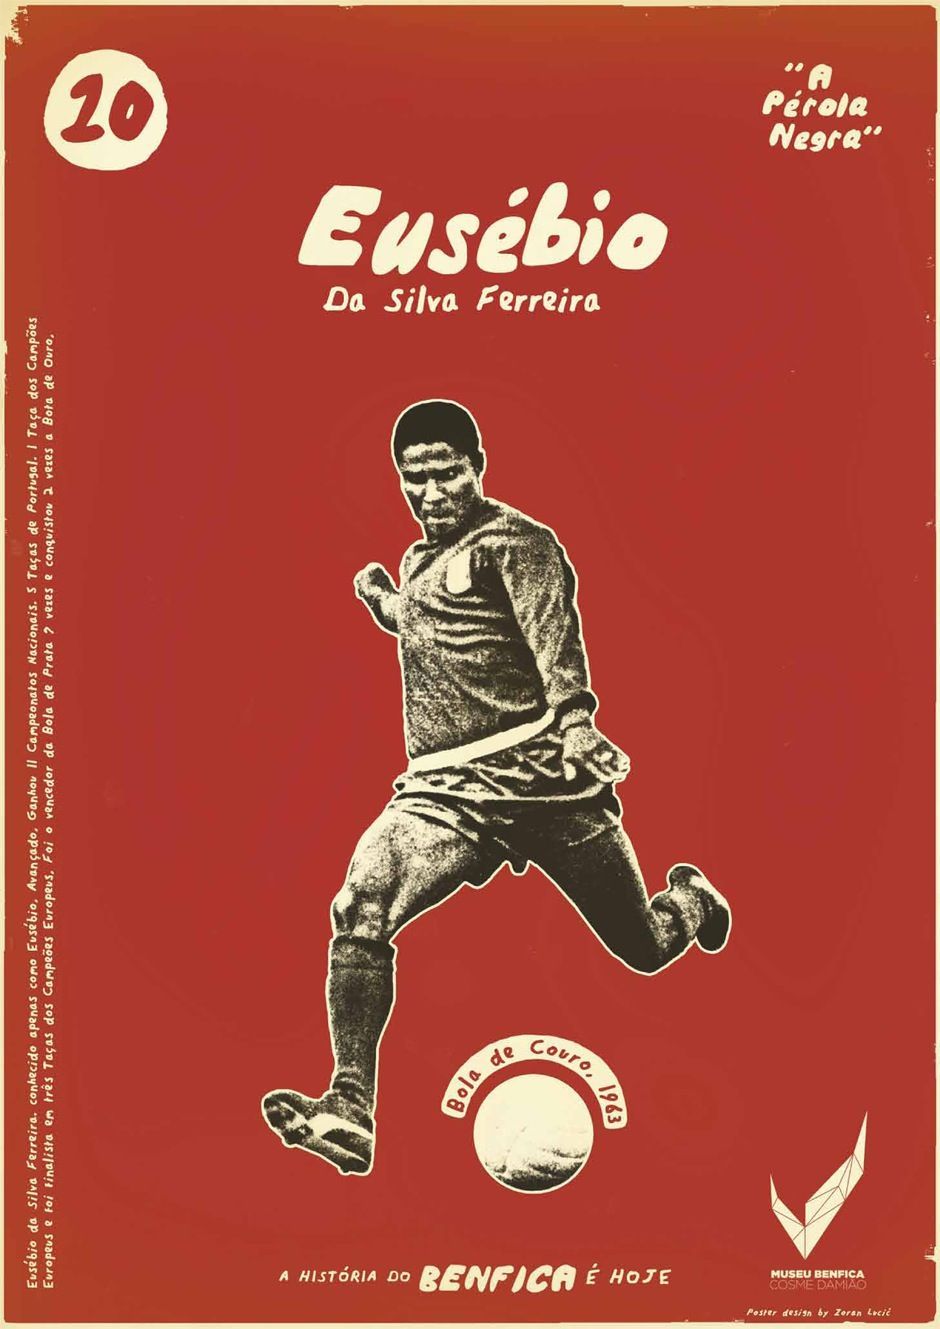 Benfica Museum: Eusebio. Eusebio, Sports graphic design, Soccer